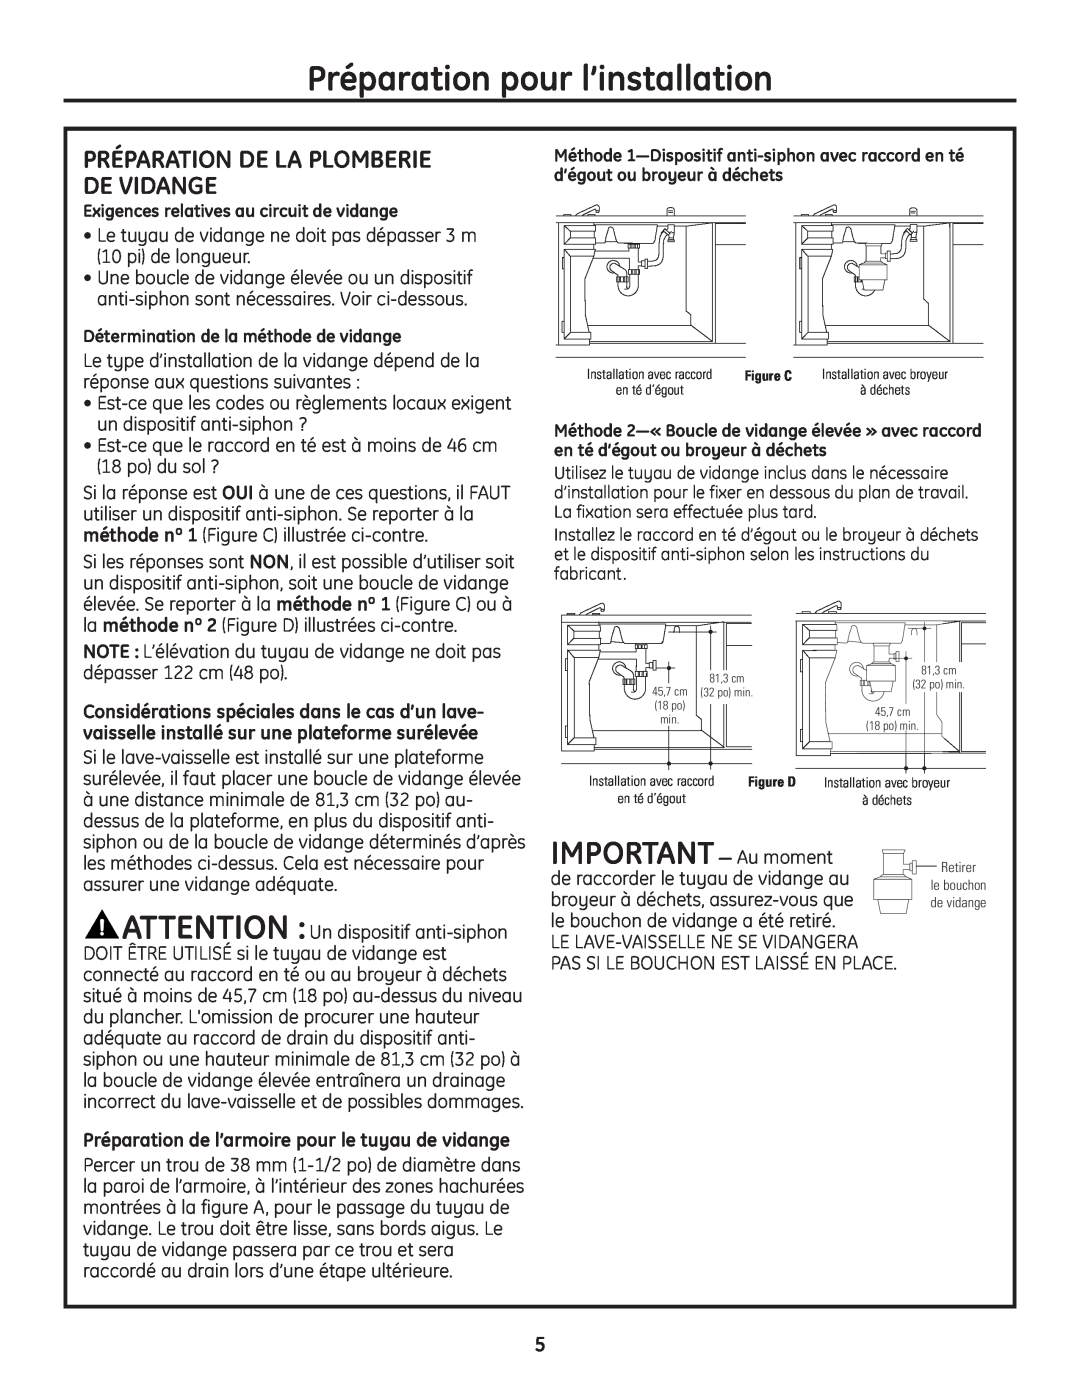 GE Monogram Built-In Dishwashers installation instructions IMPORTANT- Au moment, Préparation De La Plomberie De Vidange 